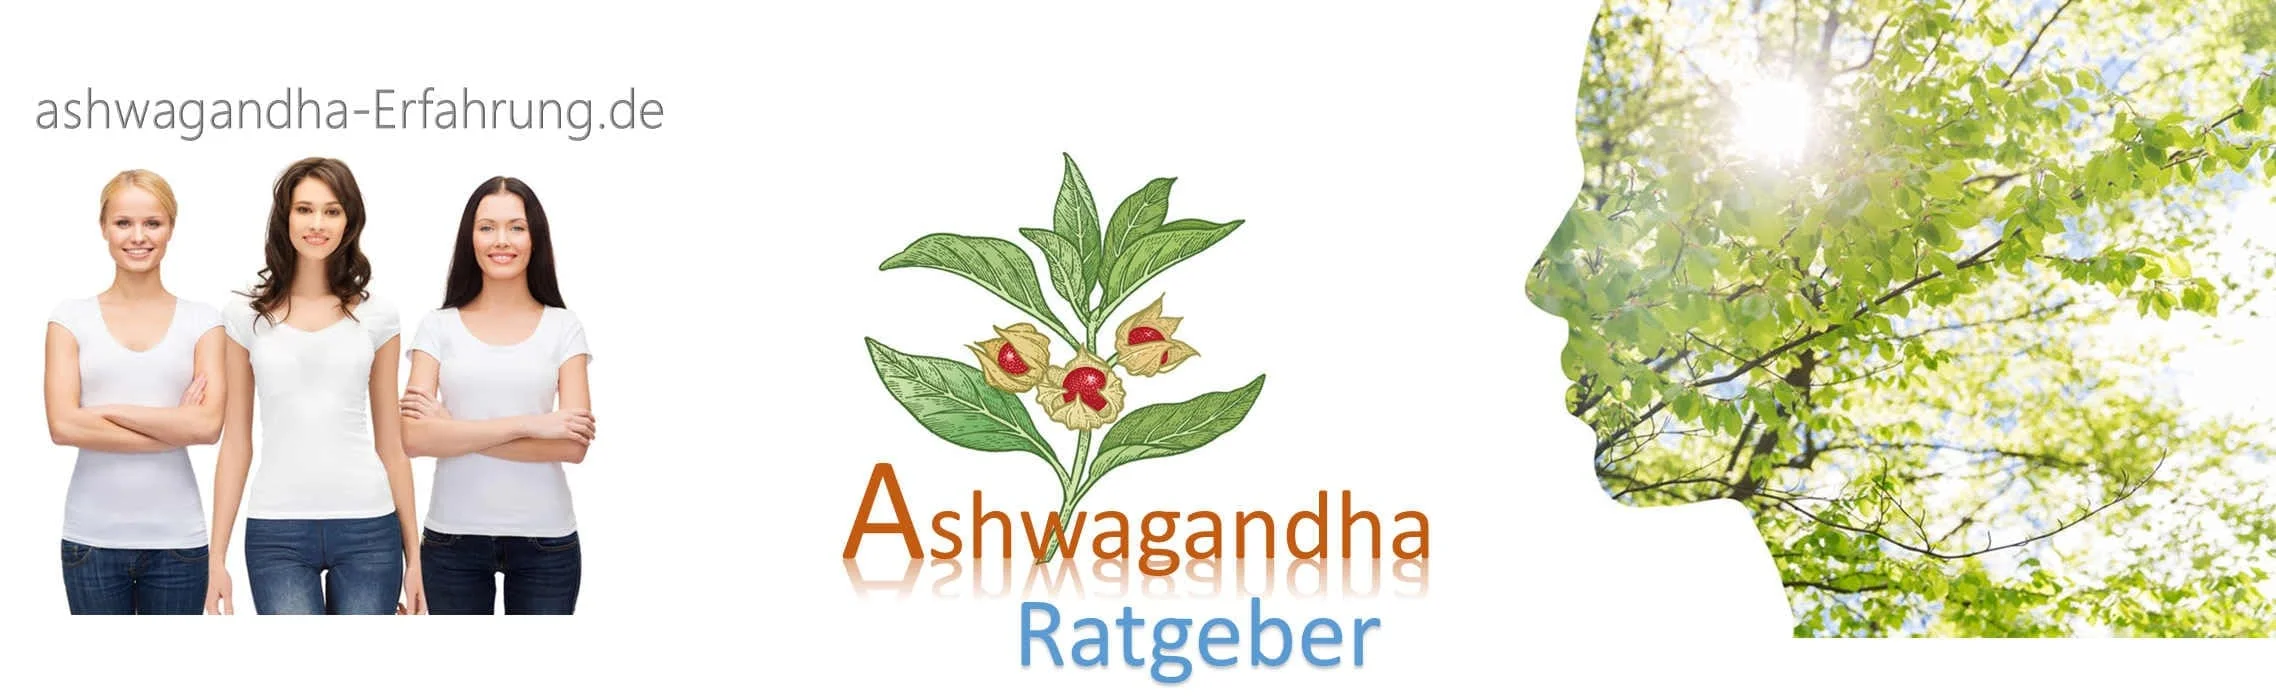 ashwagandha-banner-web